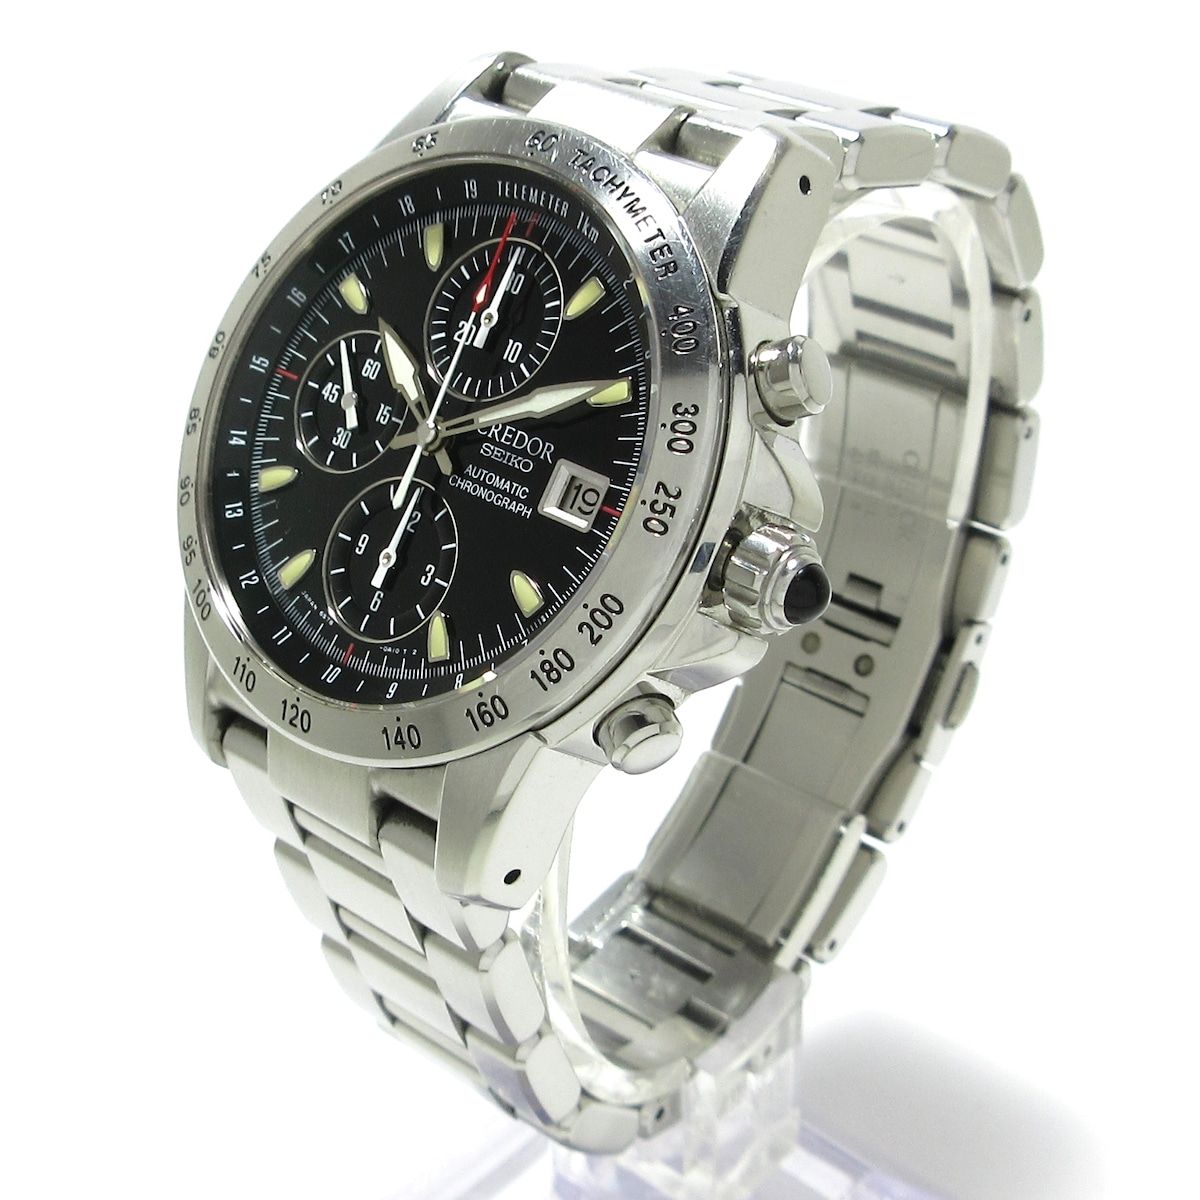 SEIKO CREDOR(セイコークレドール) 腕時計 フェニックス 6S78-0A10 